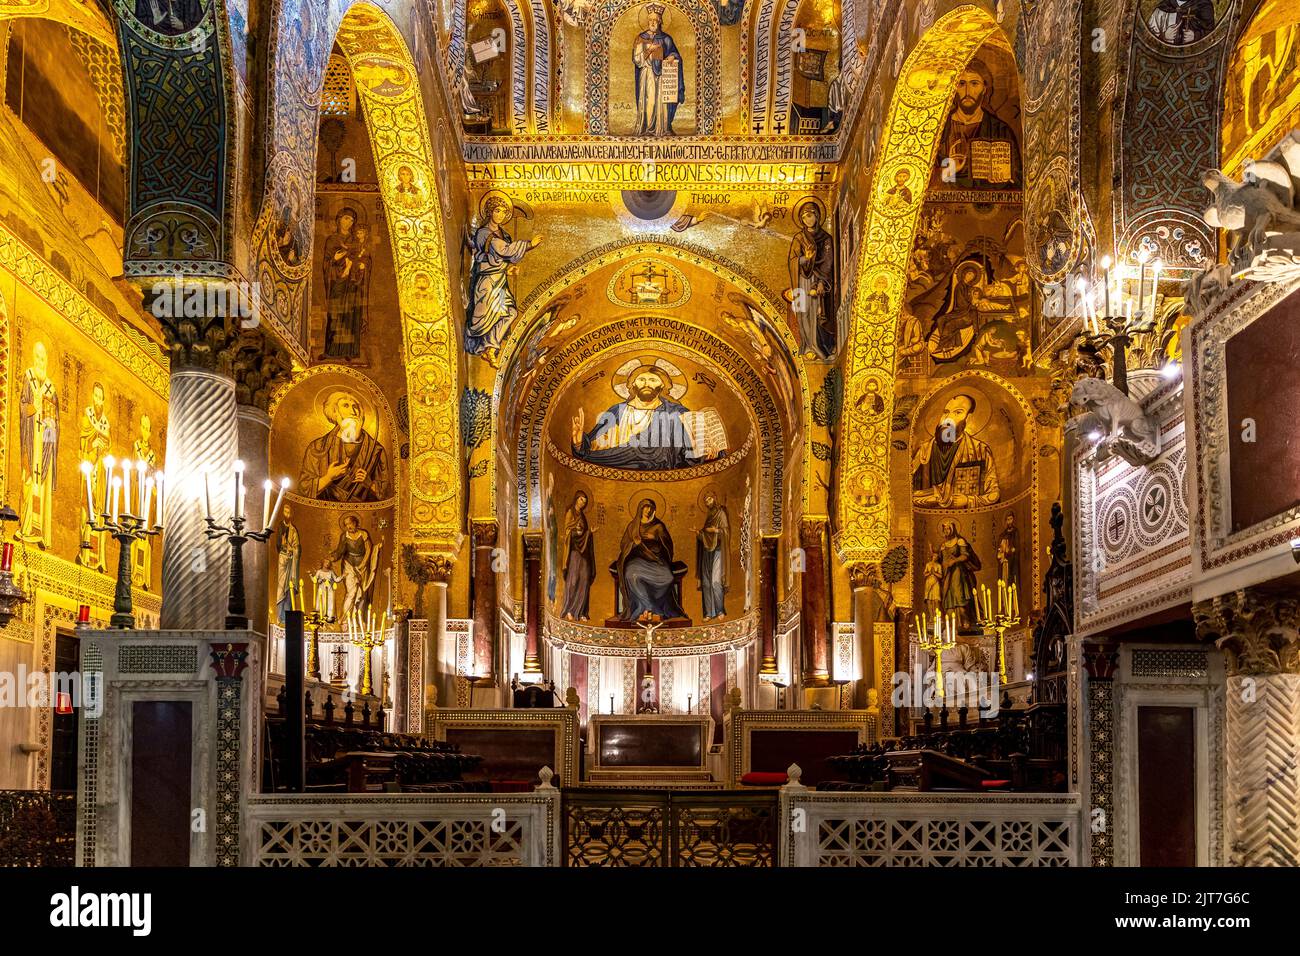 Palerme, Sicile - 6 juillet 2020 : intérieur de la chapelle palatine de Palerme en Sicile, Italie Banque D'Images